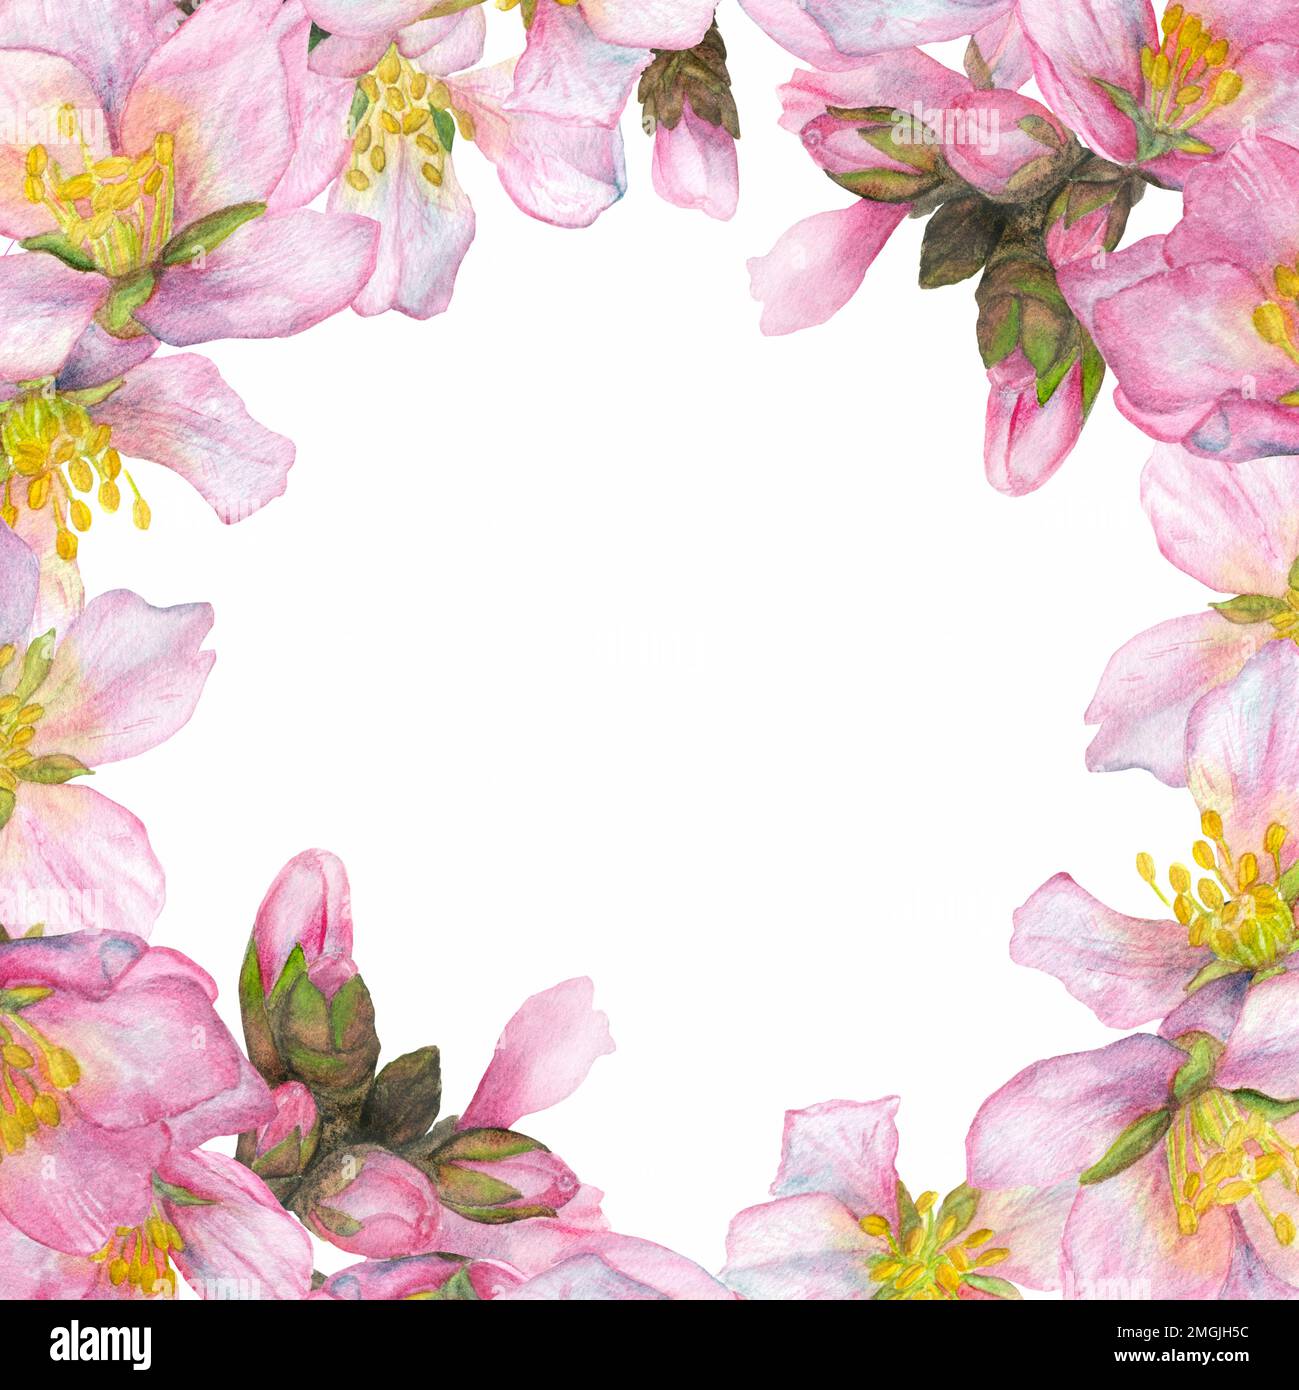 Aquarelle Darstellung, Kirschblüten am Rand eines runden Rahmens auf weißem Hintergrund. Geeignet für das Design von Postkarten, Einladungen, Bussen Stockfoto